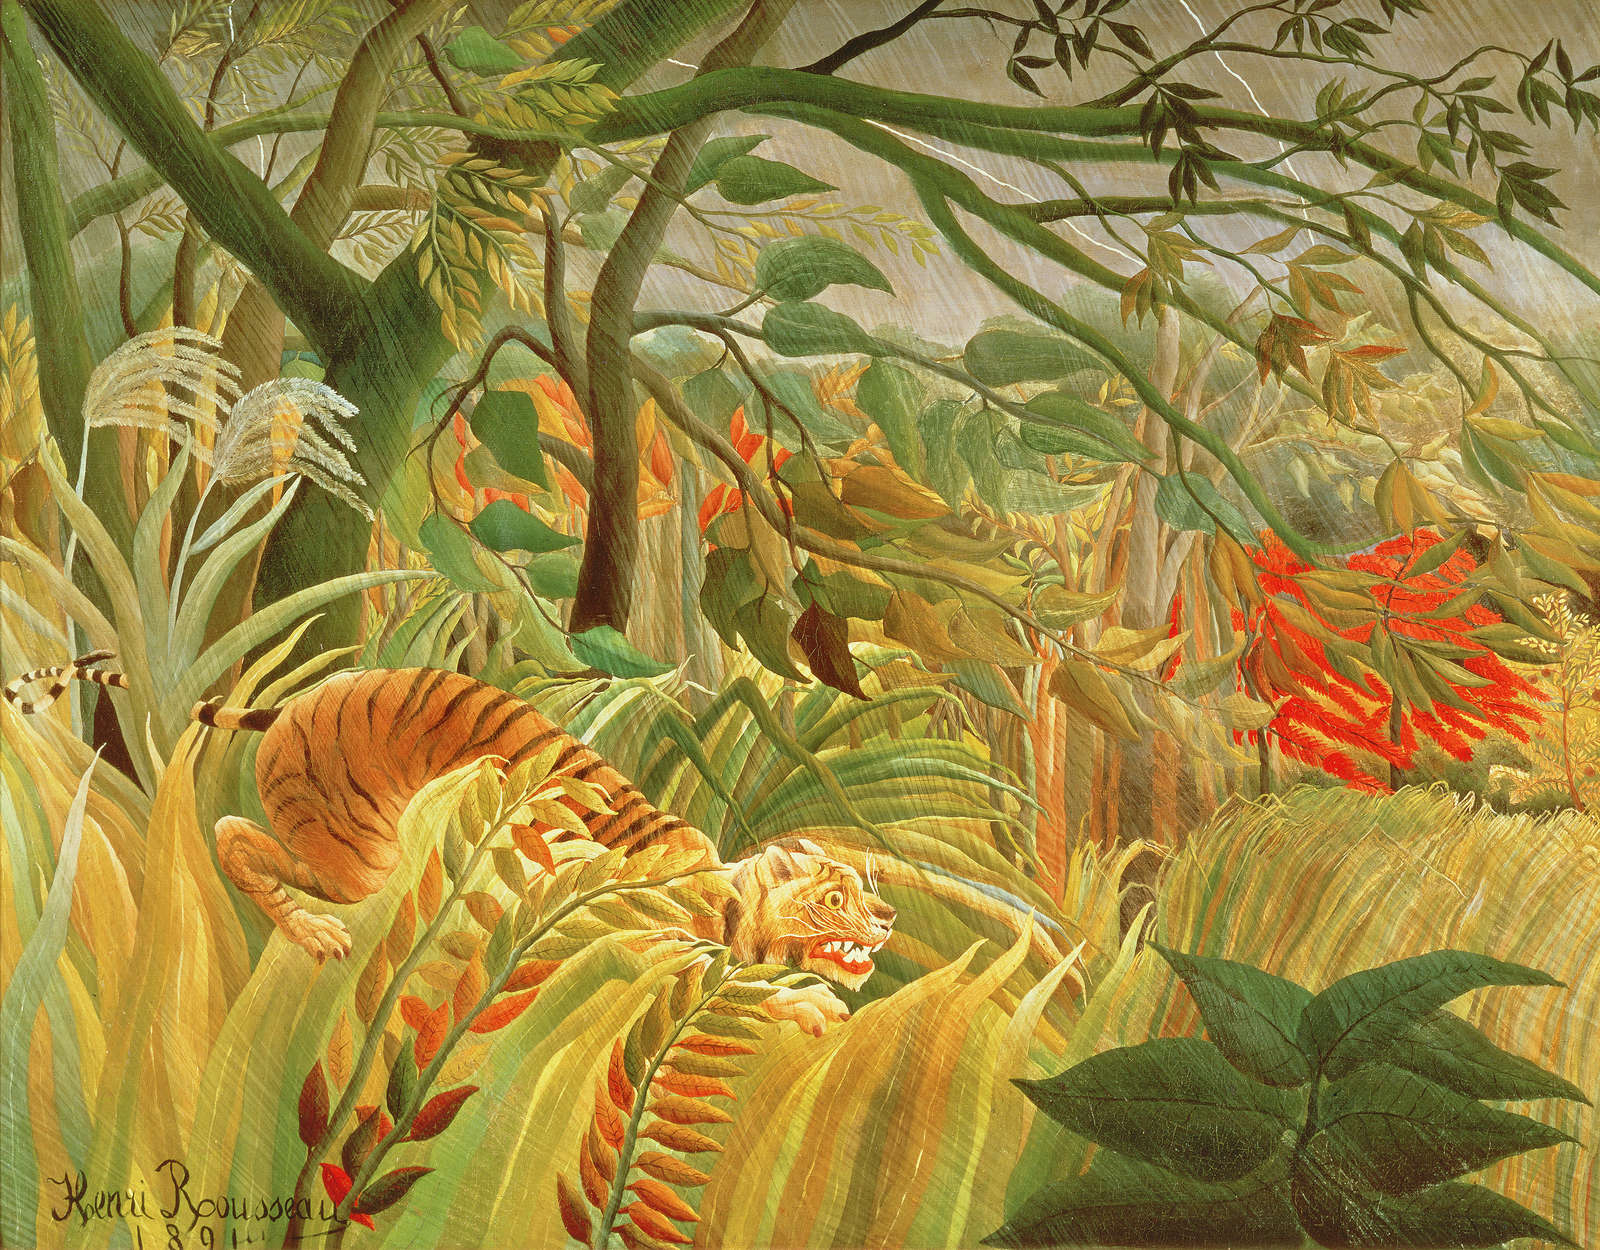             Muurschildering "Tijger in een tropische storm" door Henri Rousseau
        